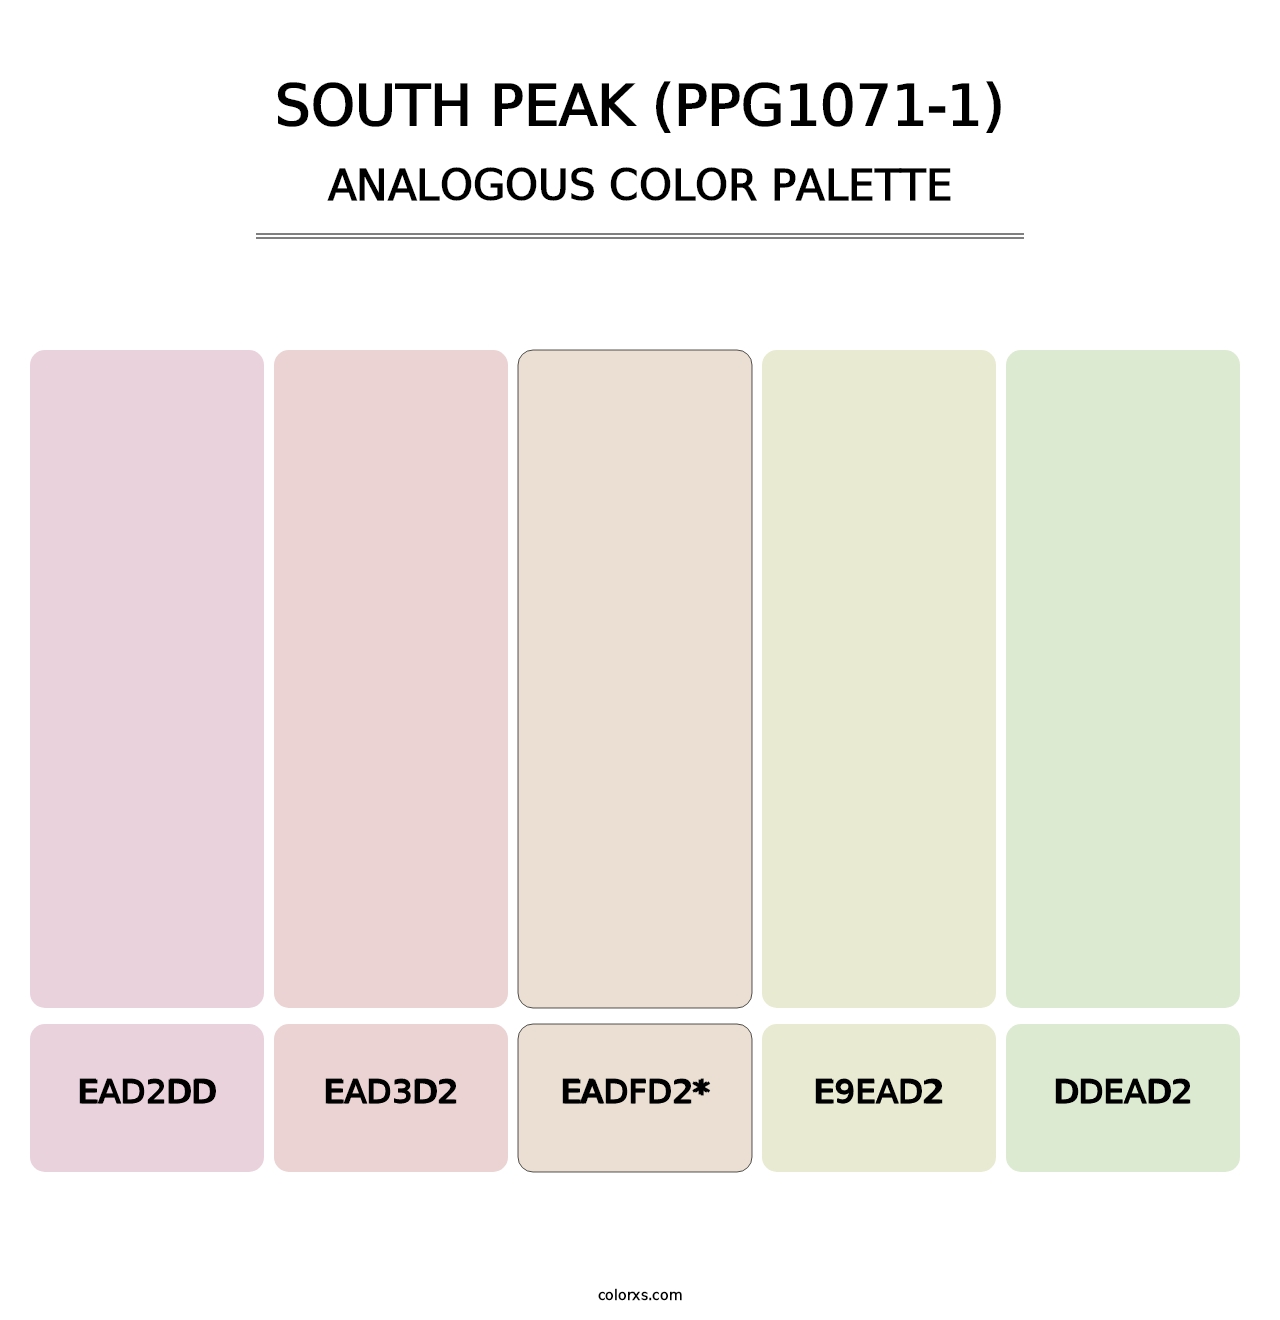 South Peak (PPG1071-1) - Analogous Color Palette